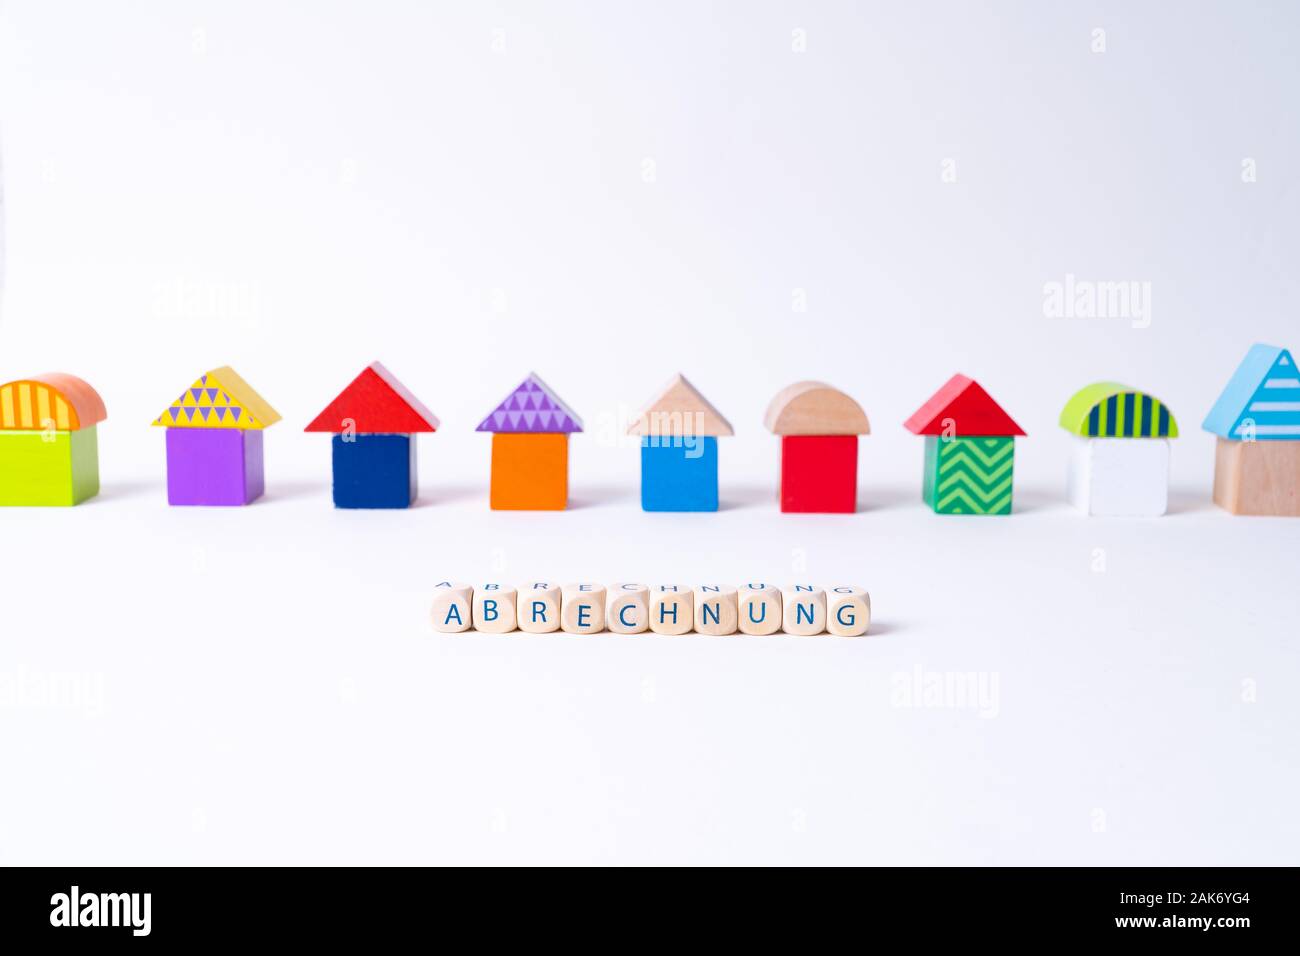 Würfel mit Buchstaben: "Abrechnung", das deutsche Wort für Rechnung vor einer Reihe von Häusern gebaut von bunten Spielzeug Spielzeug Bausteine Stockfoto